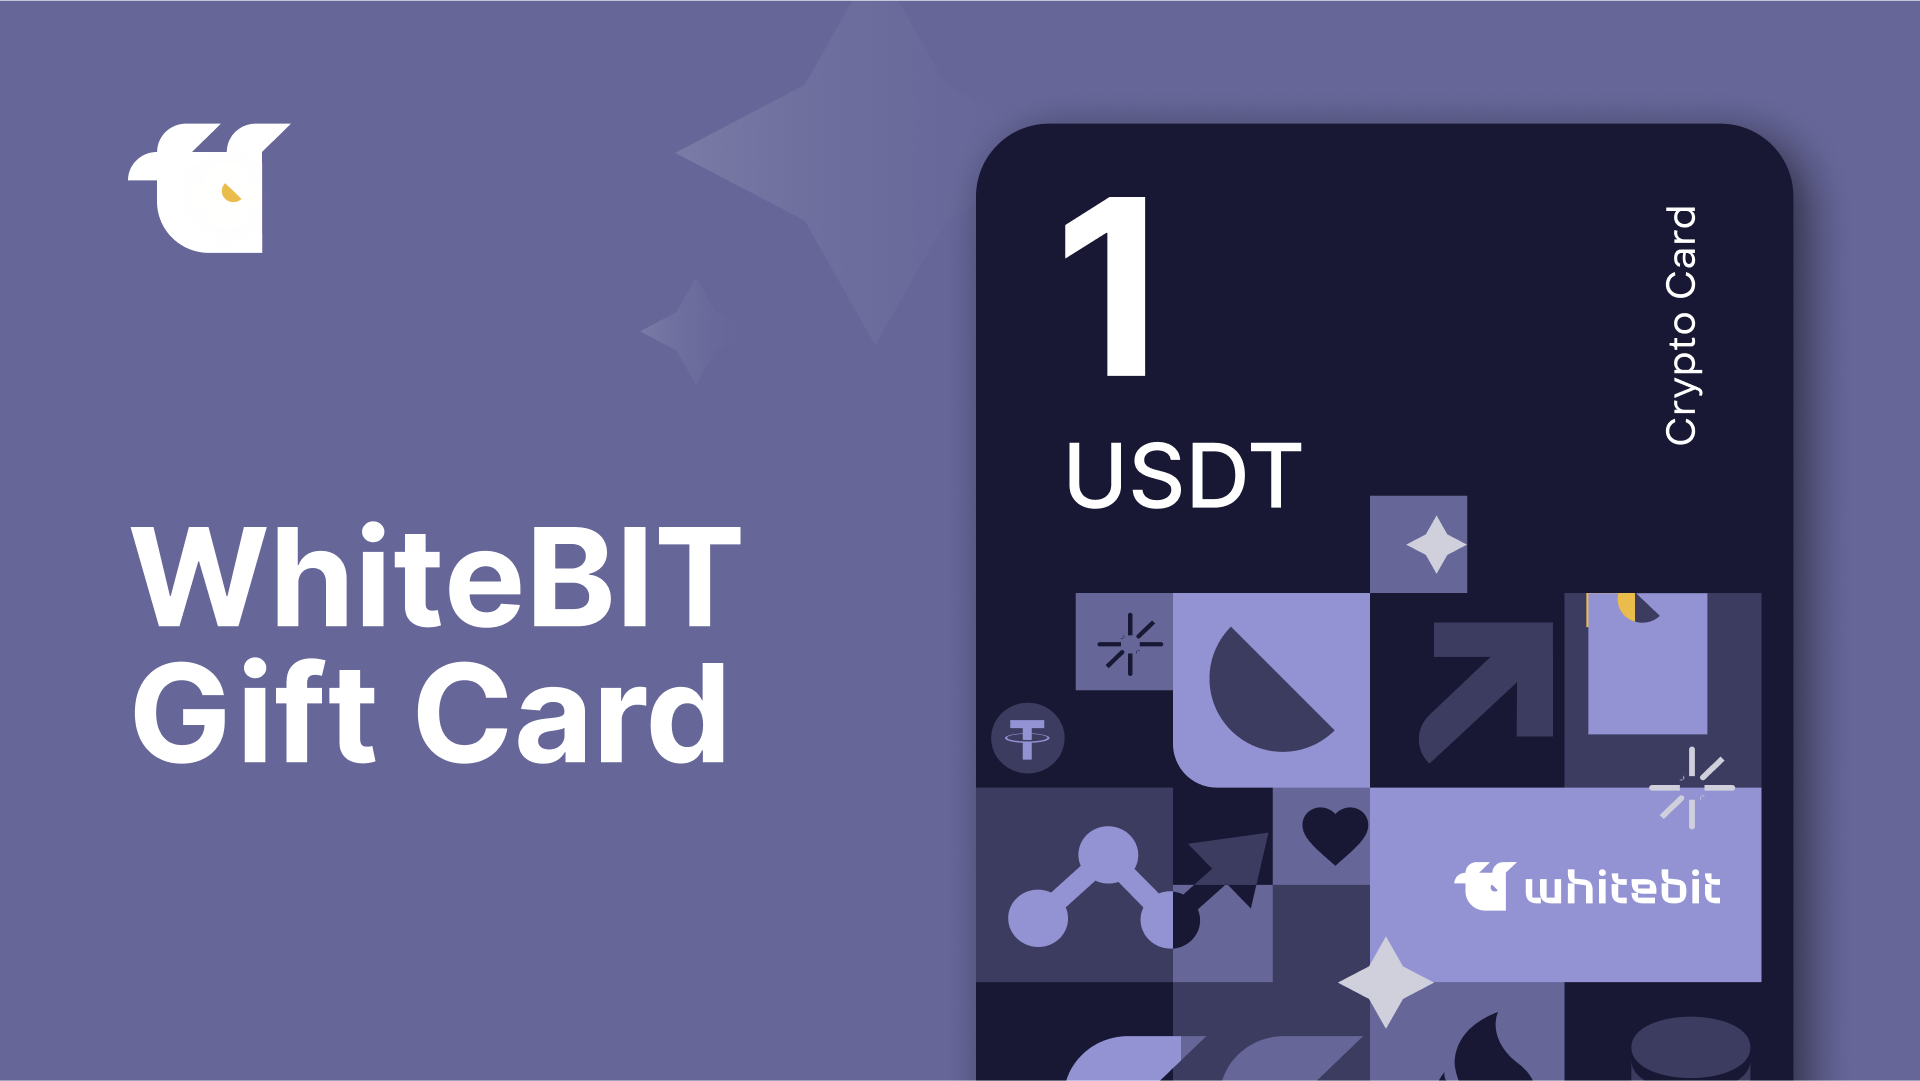 WhiteBIT 1 USDT Gift Card [$ 1.33]